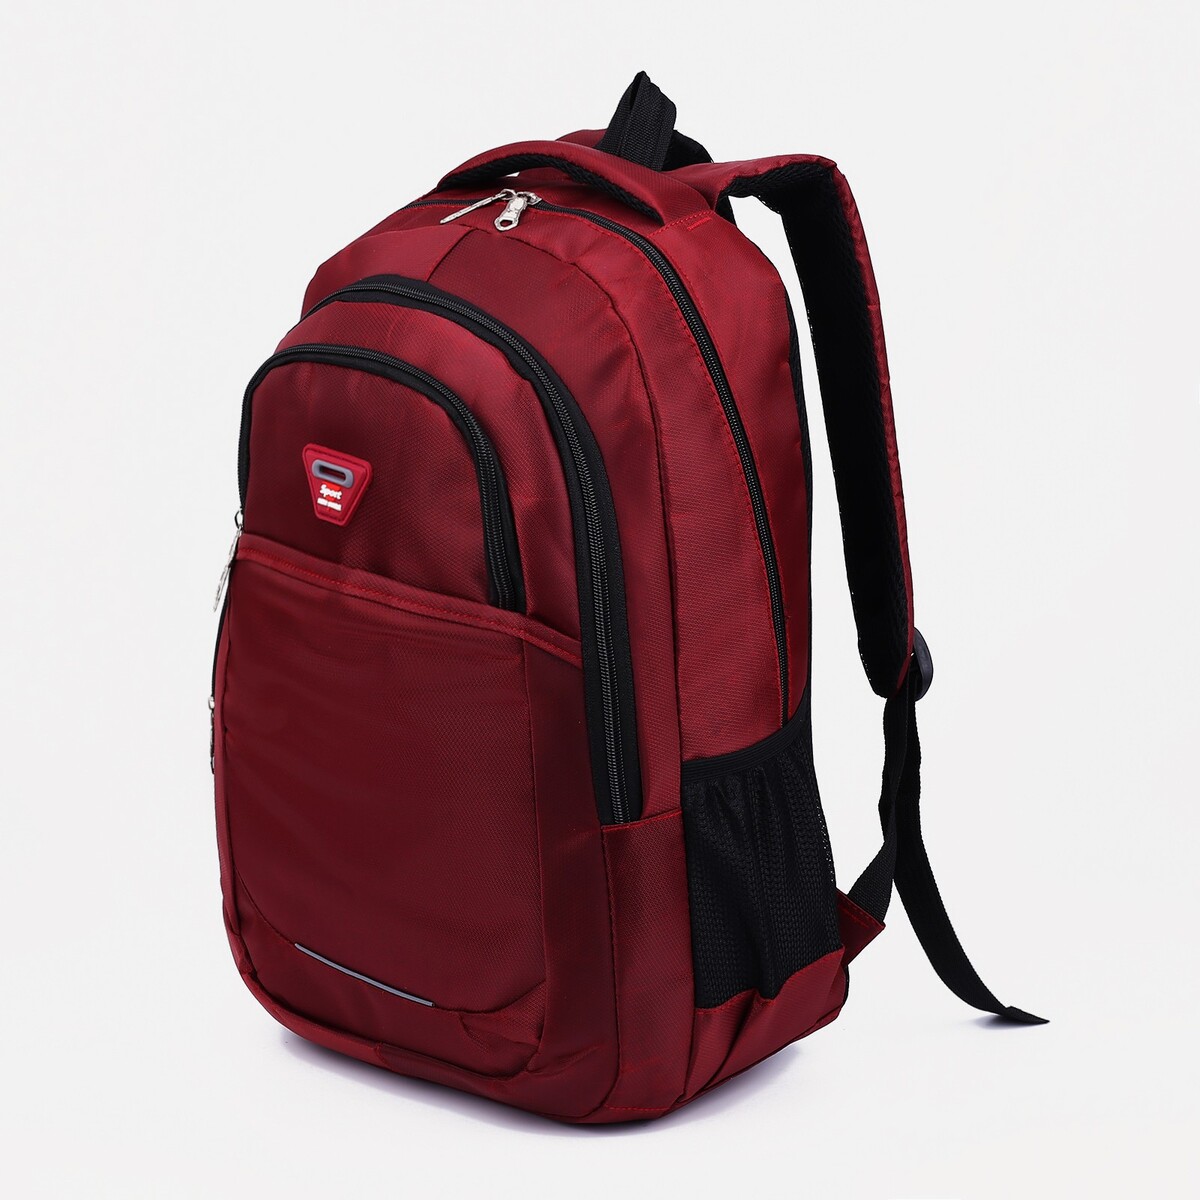 Рюкзак молодежный из текстиля, 2 отдела, 2 кармана, цвет бордовый рюкзак классики 28 11 38 см 1 отд на молнии 4 н кармана бордовый